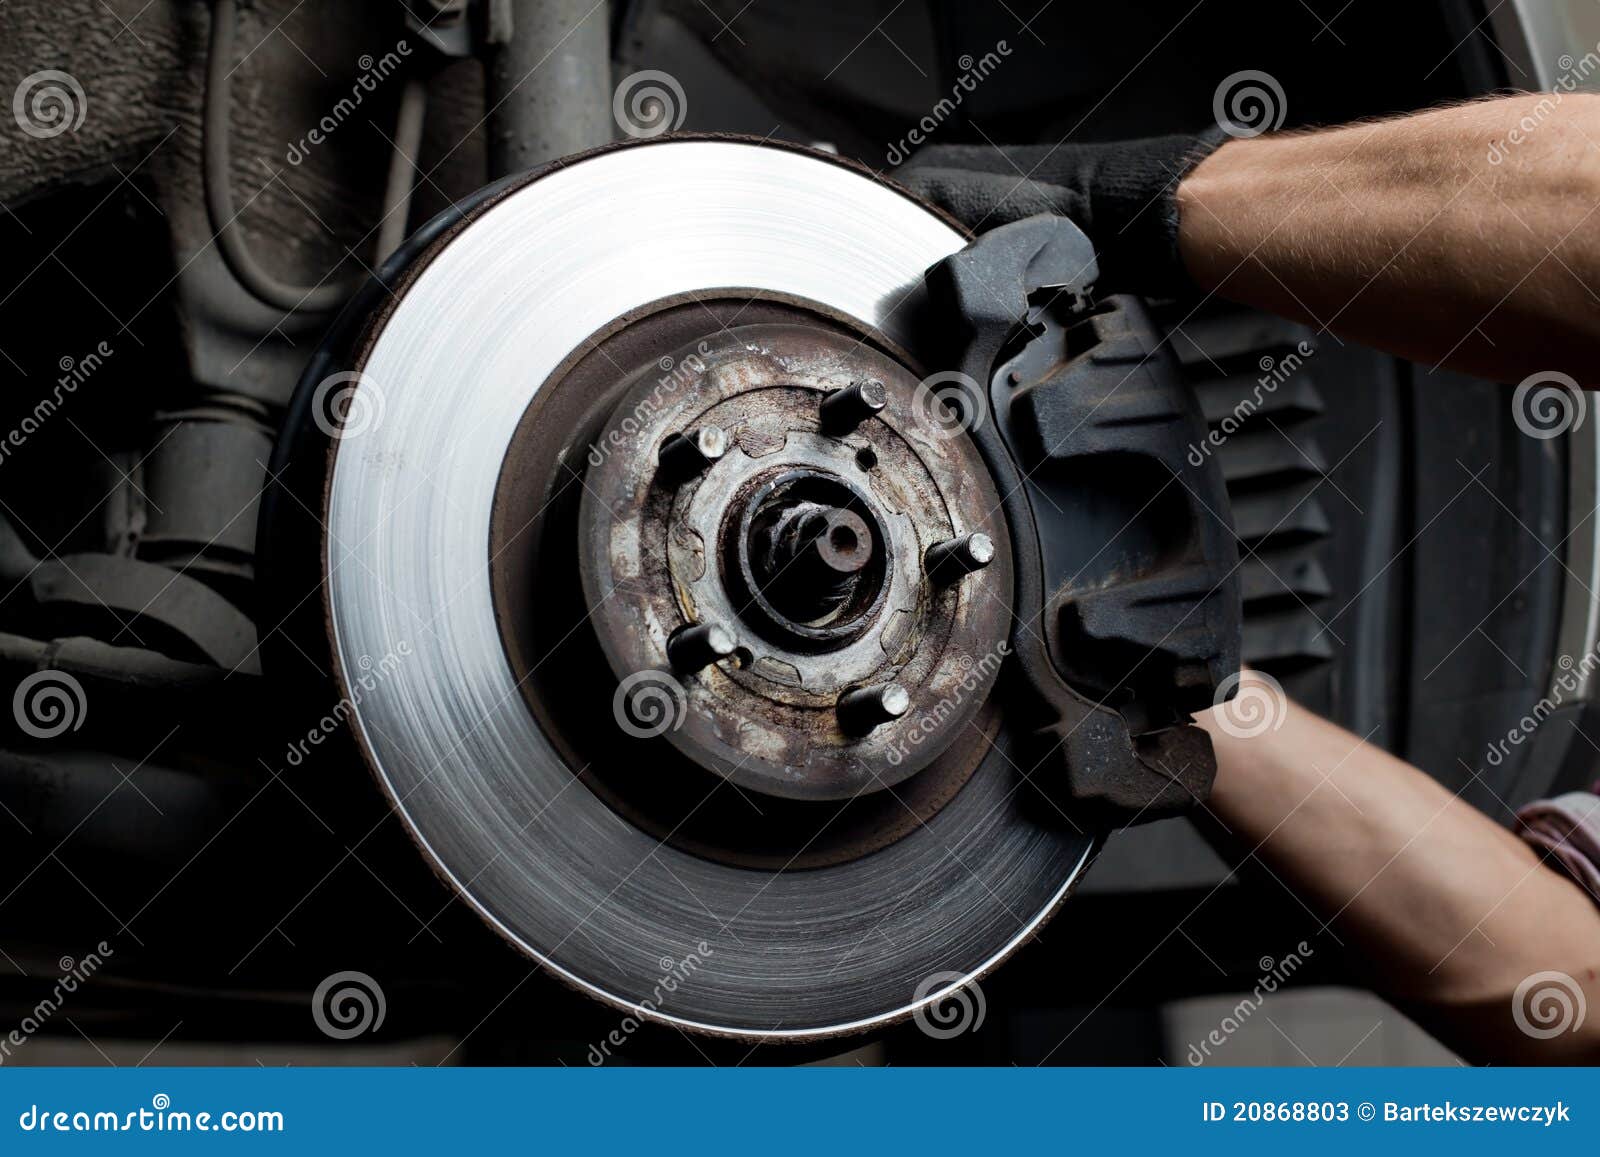 car mechanic repair brake pads